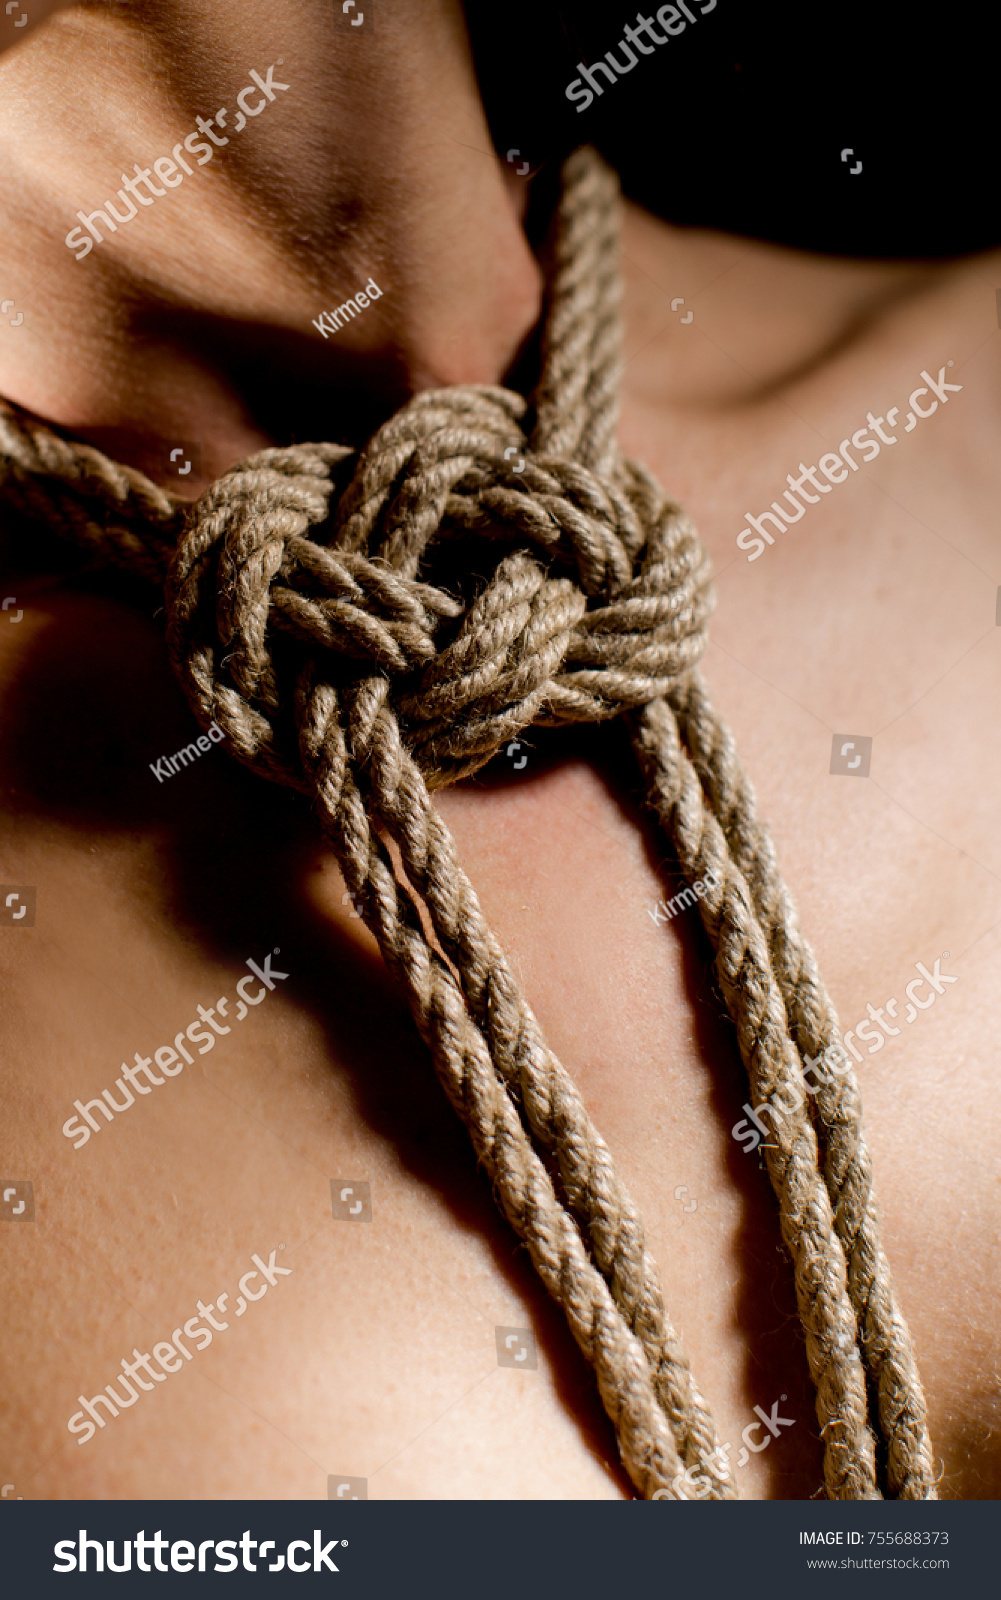 Рабыня с веревкой на шее фото